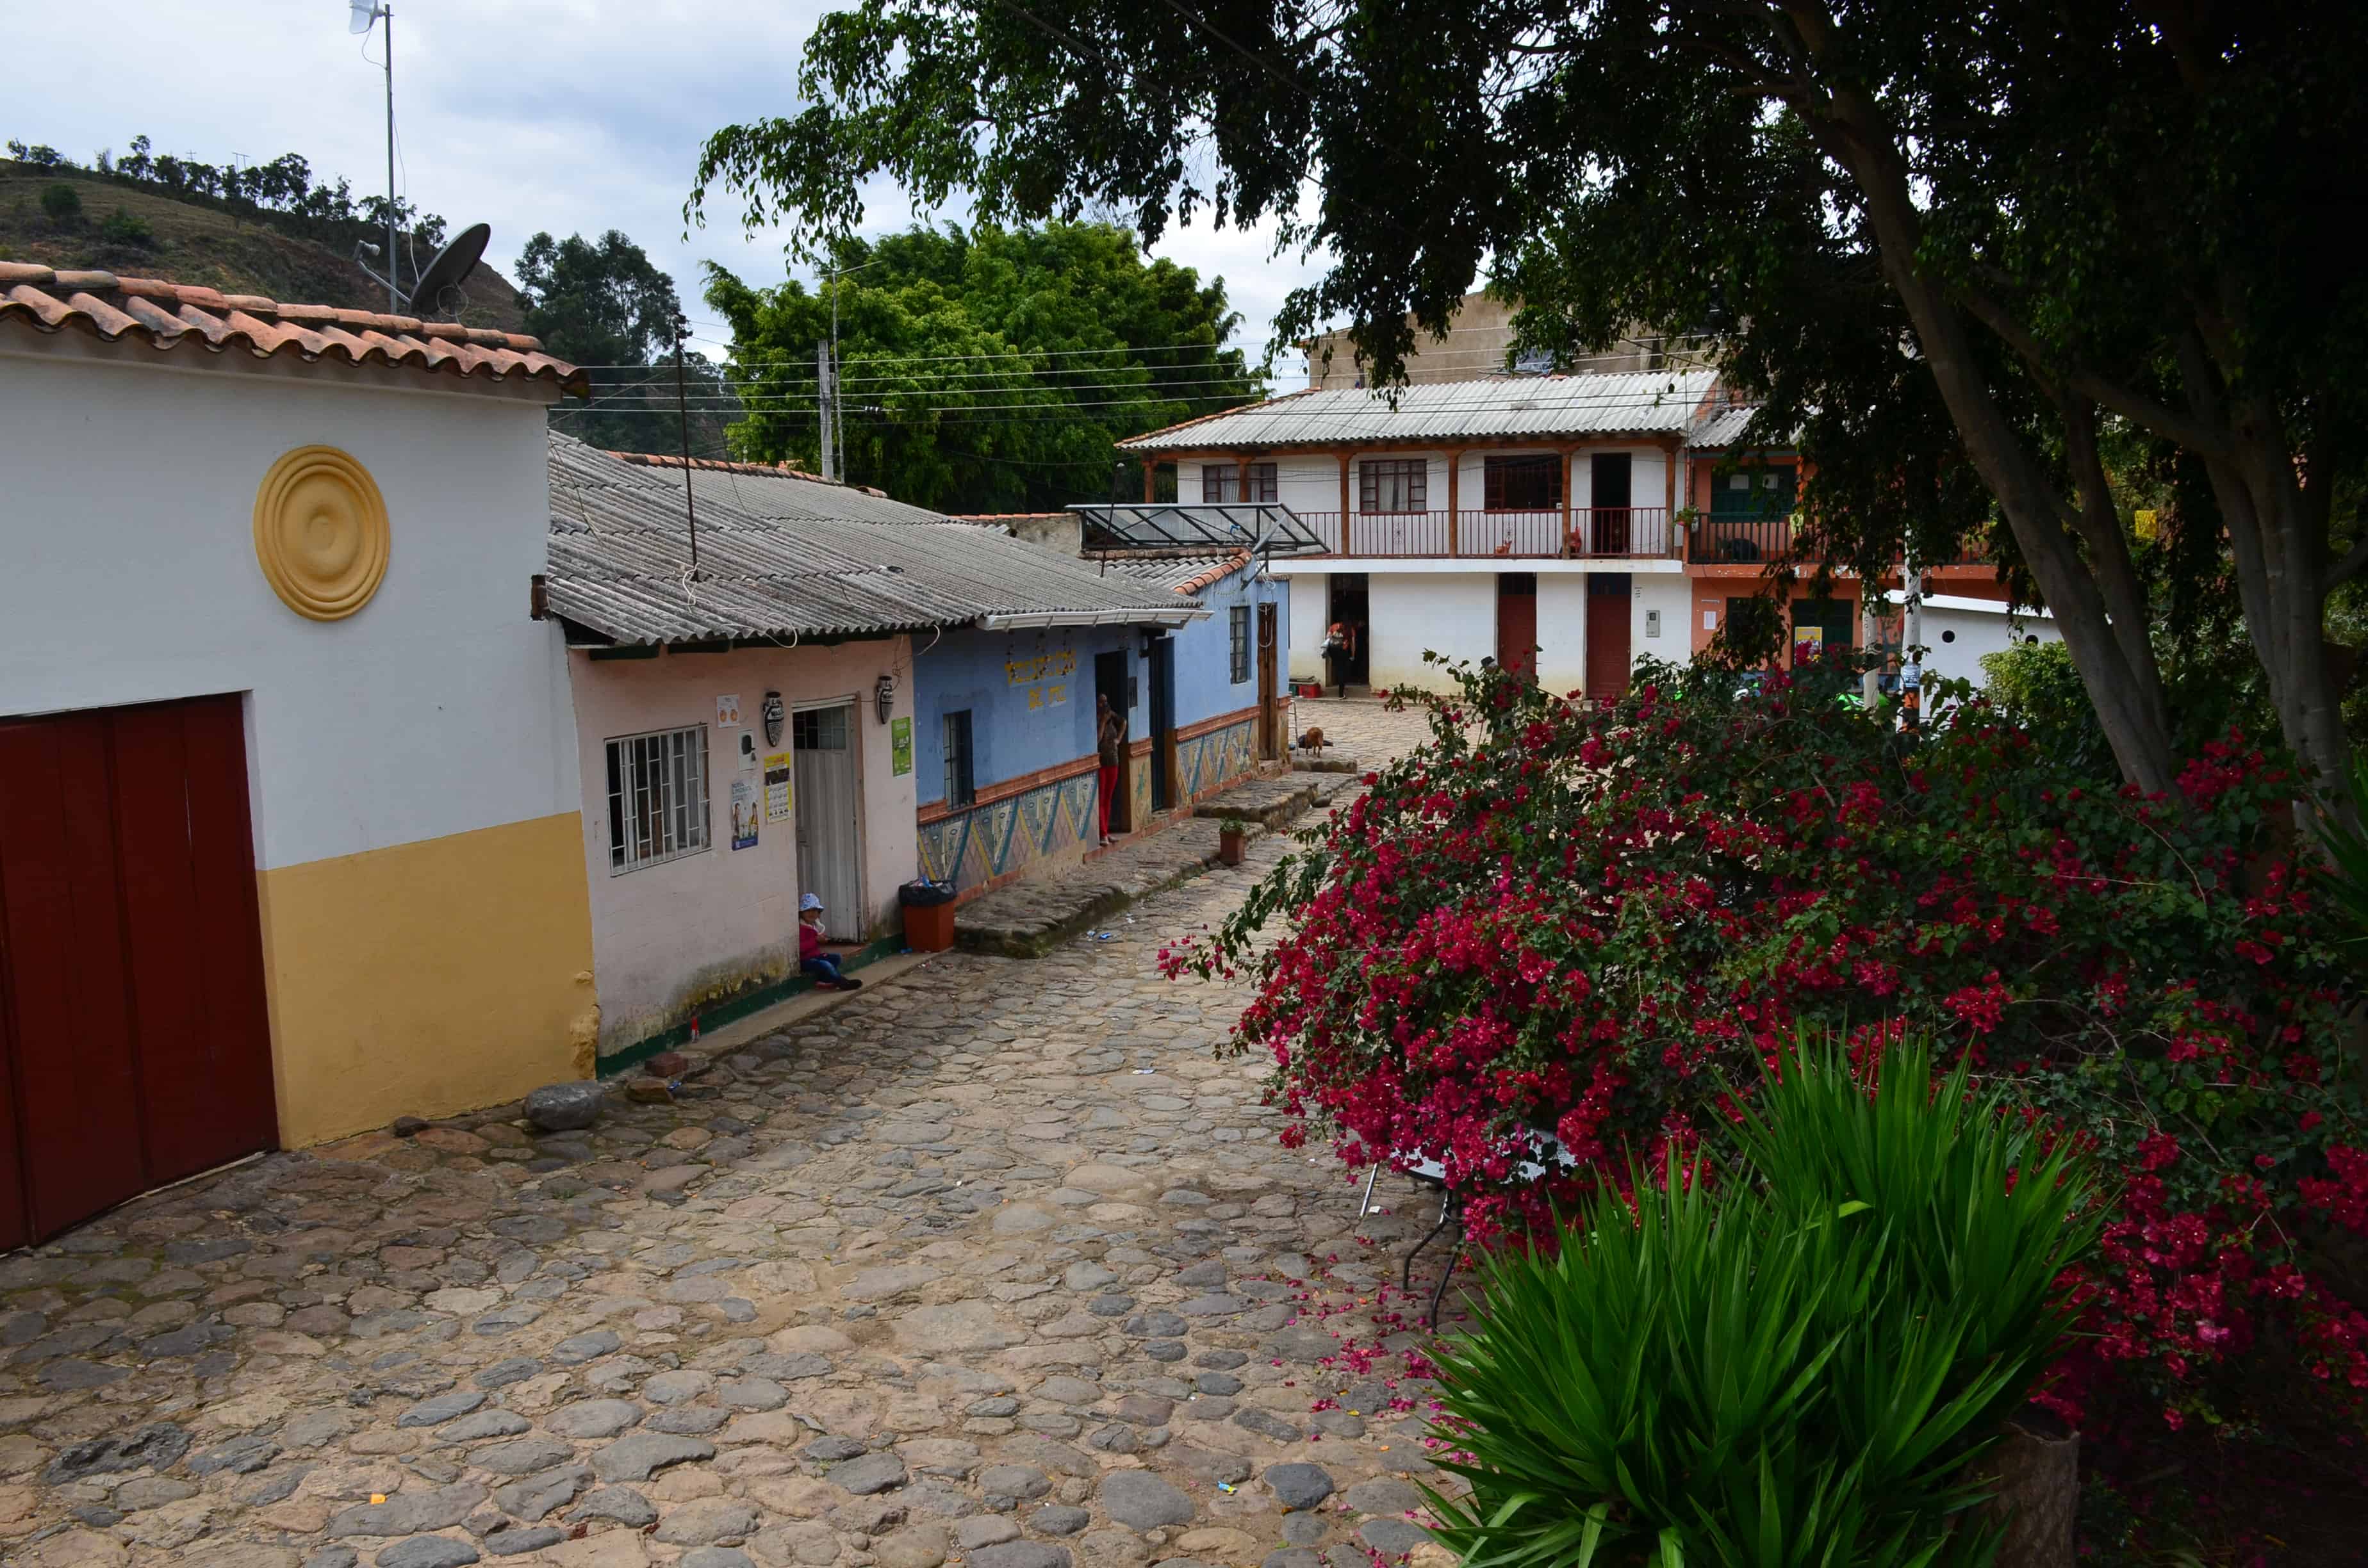 La Candelaria, Boyacá, Colombia